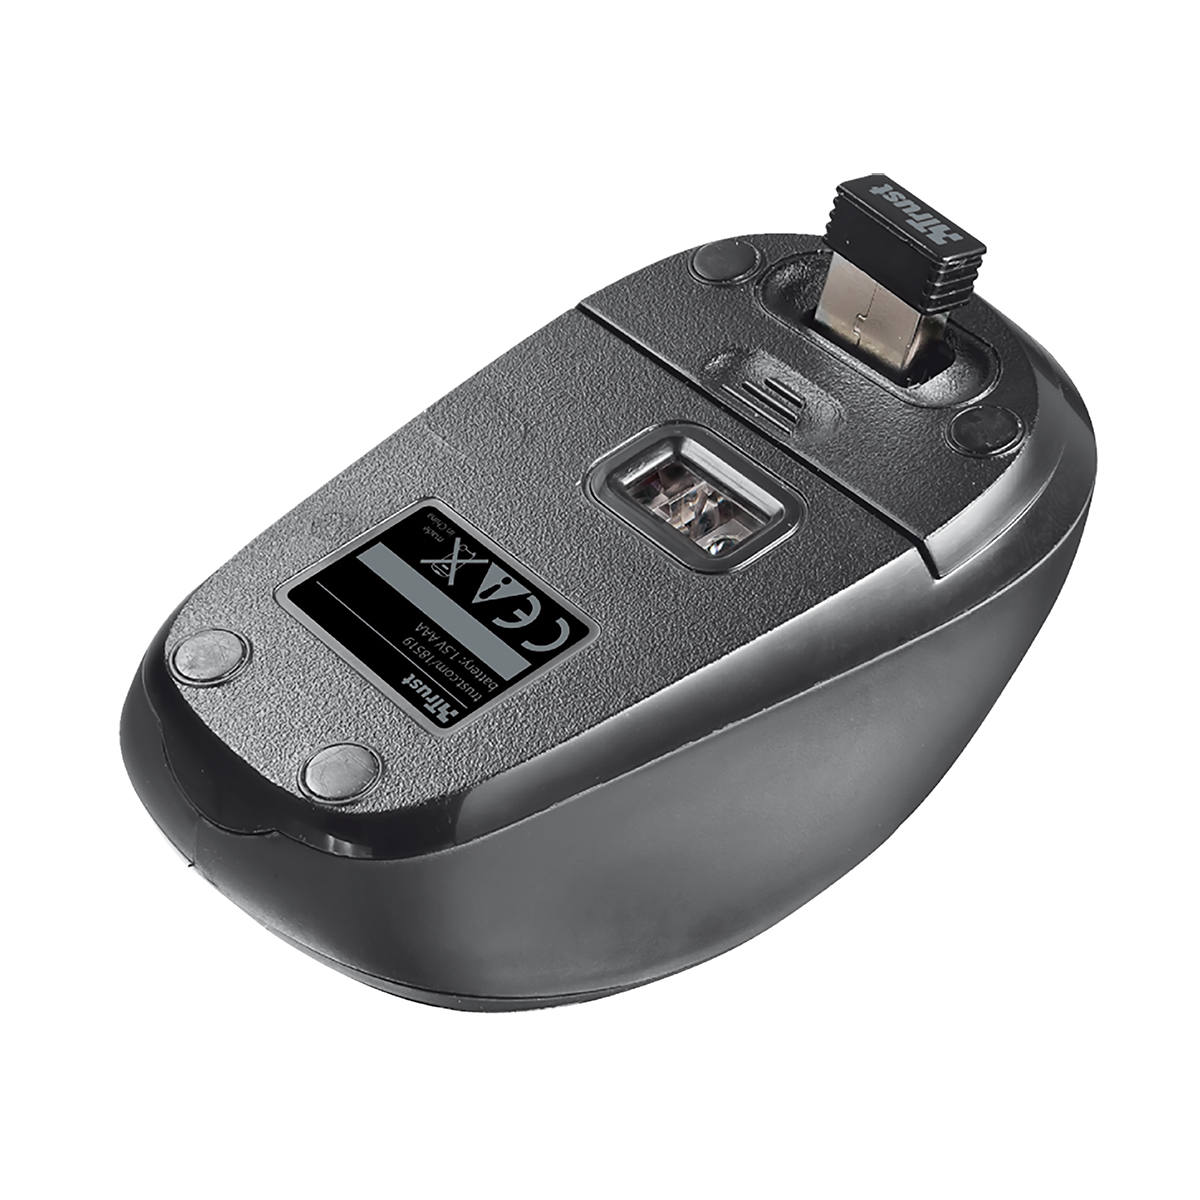 Mouse Wireless Compacto com Botão Seletor de DPI Micro Receptor USB Acompanha Pilha Trust Yvi Cinza